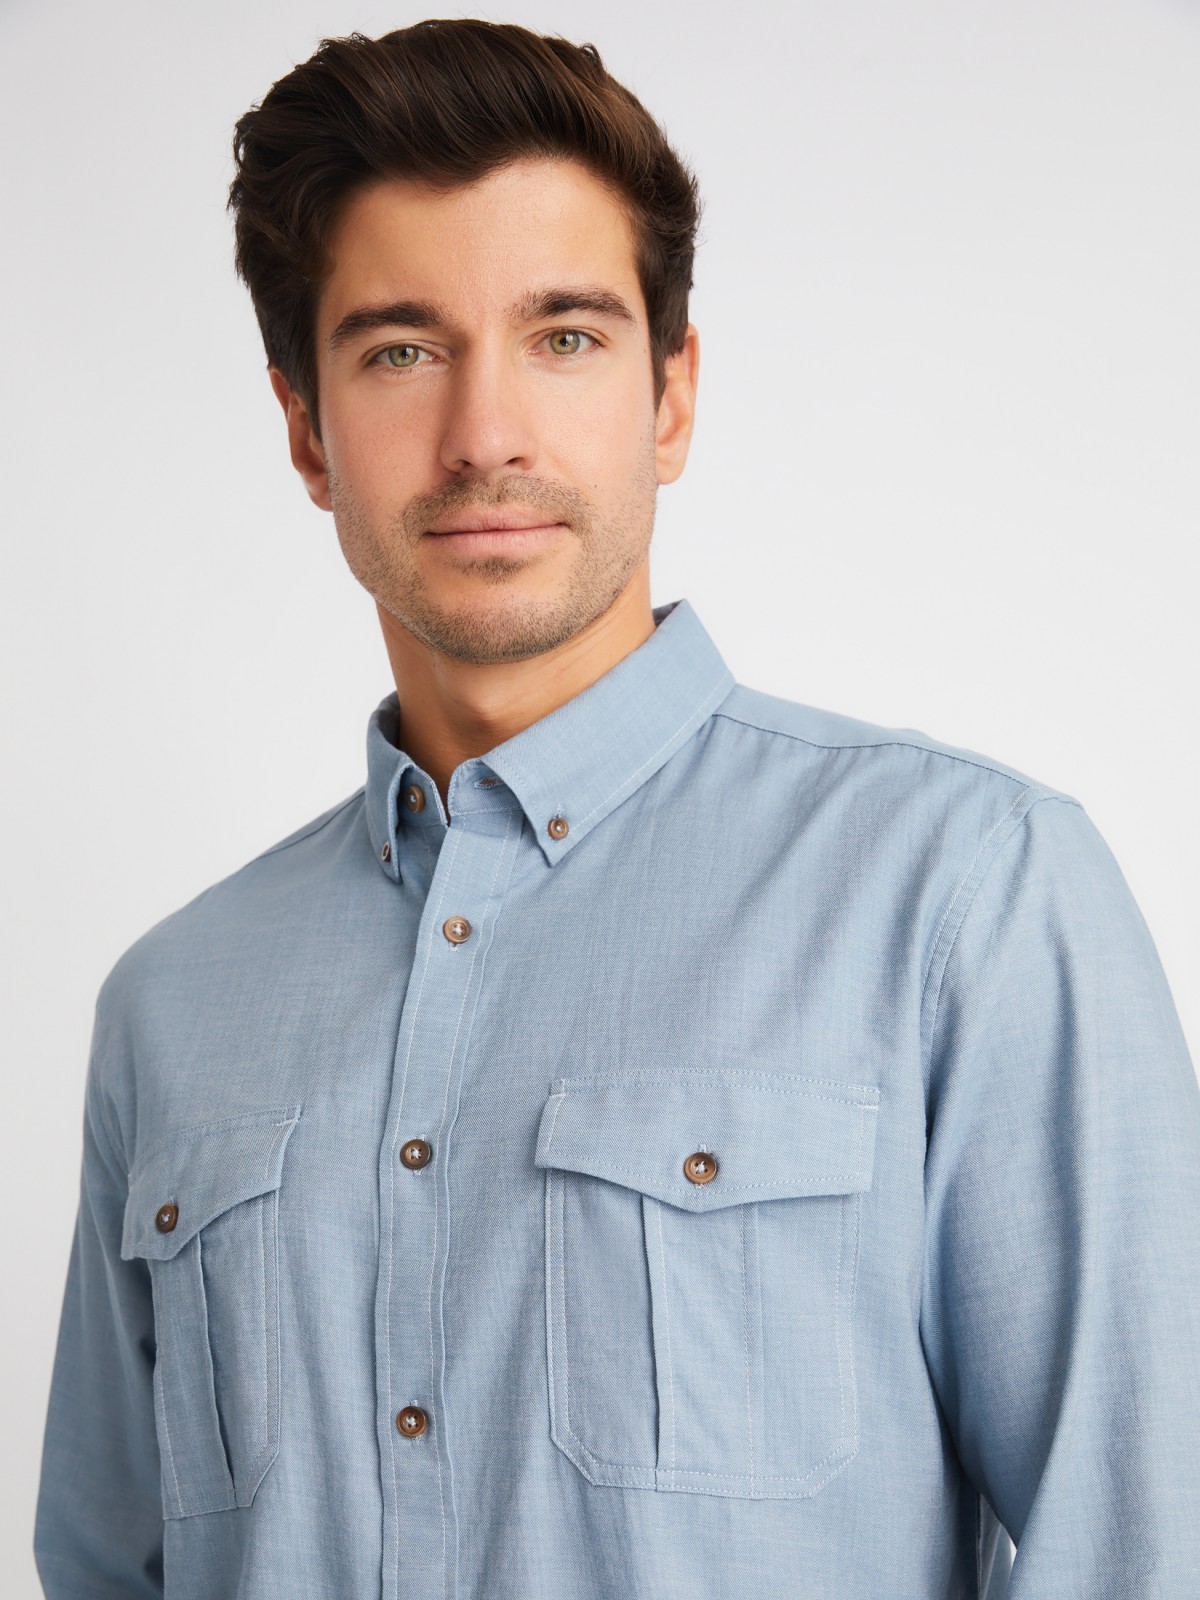 Рубашка из хлопка с длинным рукавом и карманами zolla 01413214R033, цвет светло-голубой, размер M - фото 4